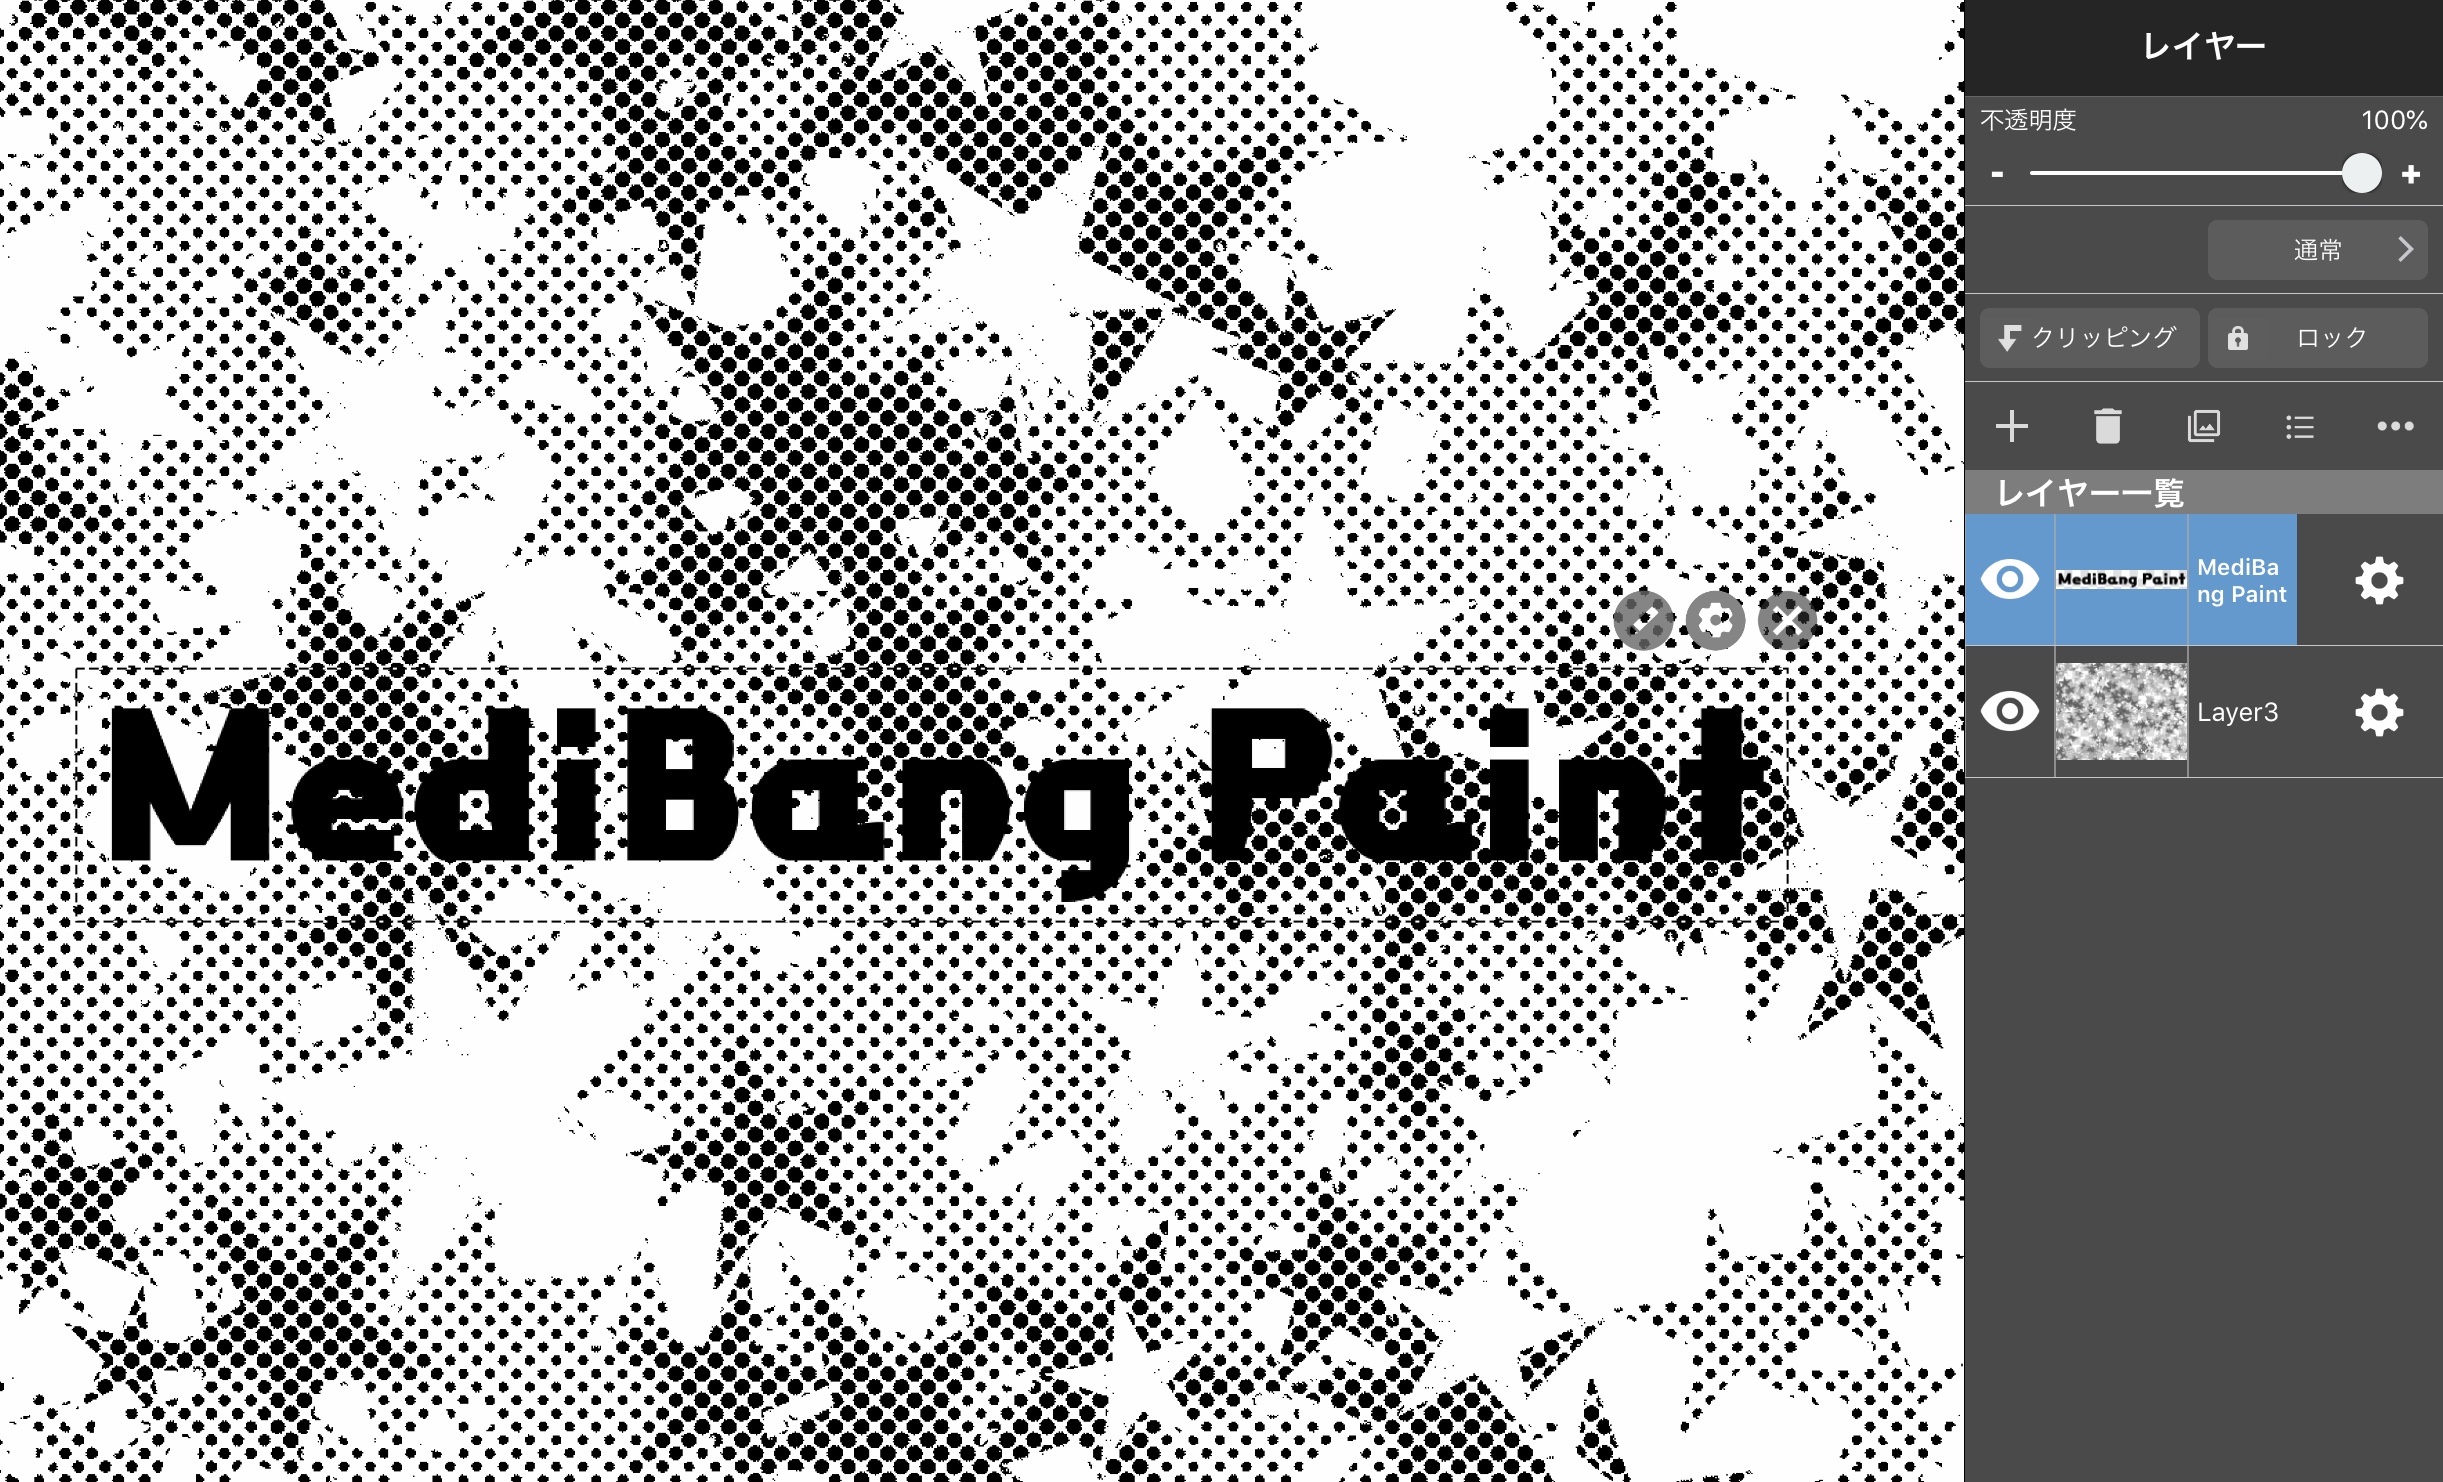 如何给文字加边框使其更明显 Medibang Paint